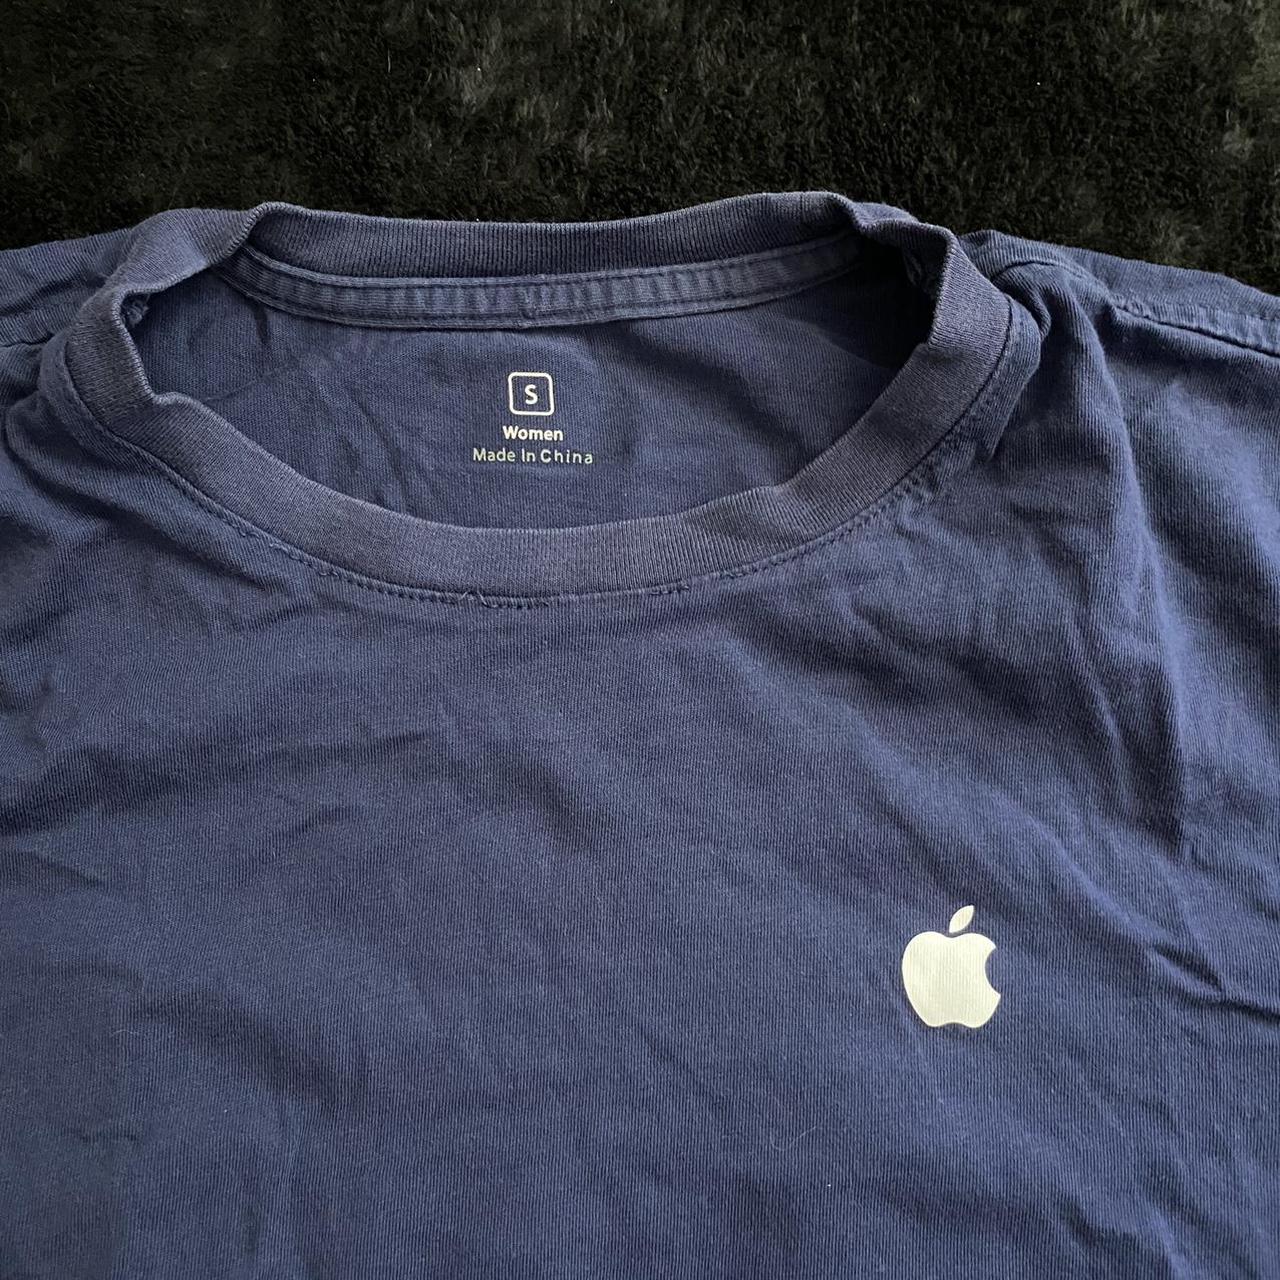 Apple Women's T-shirt (2)